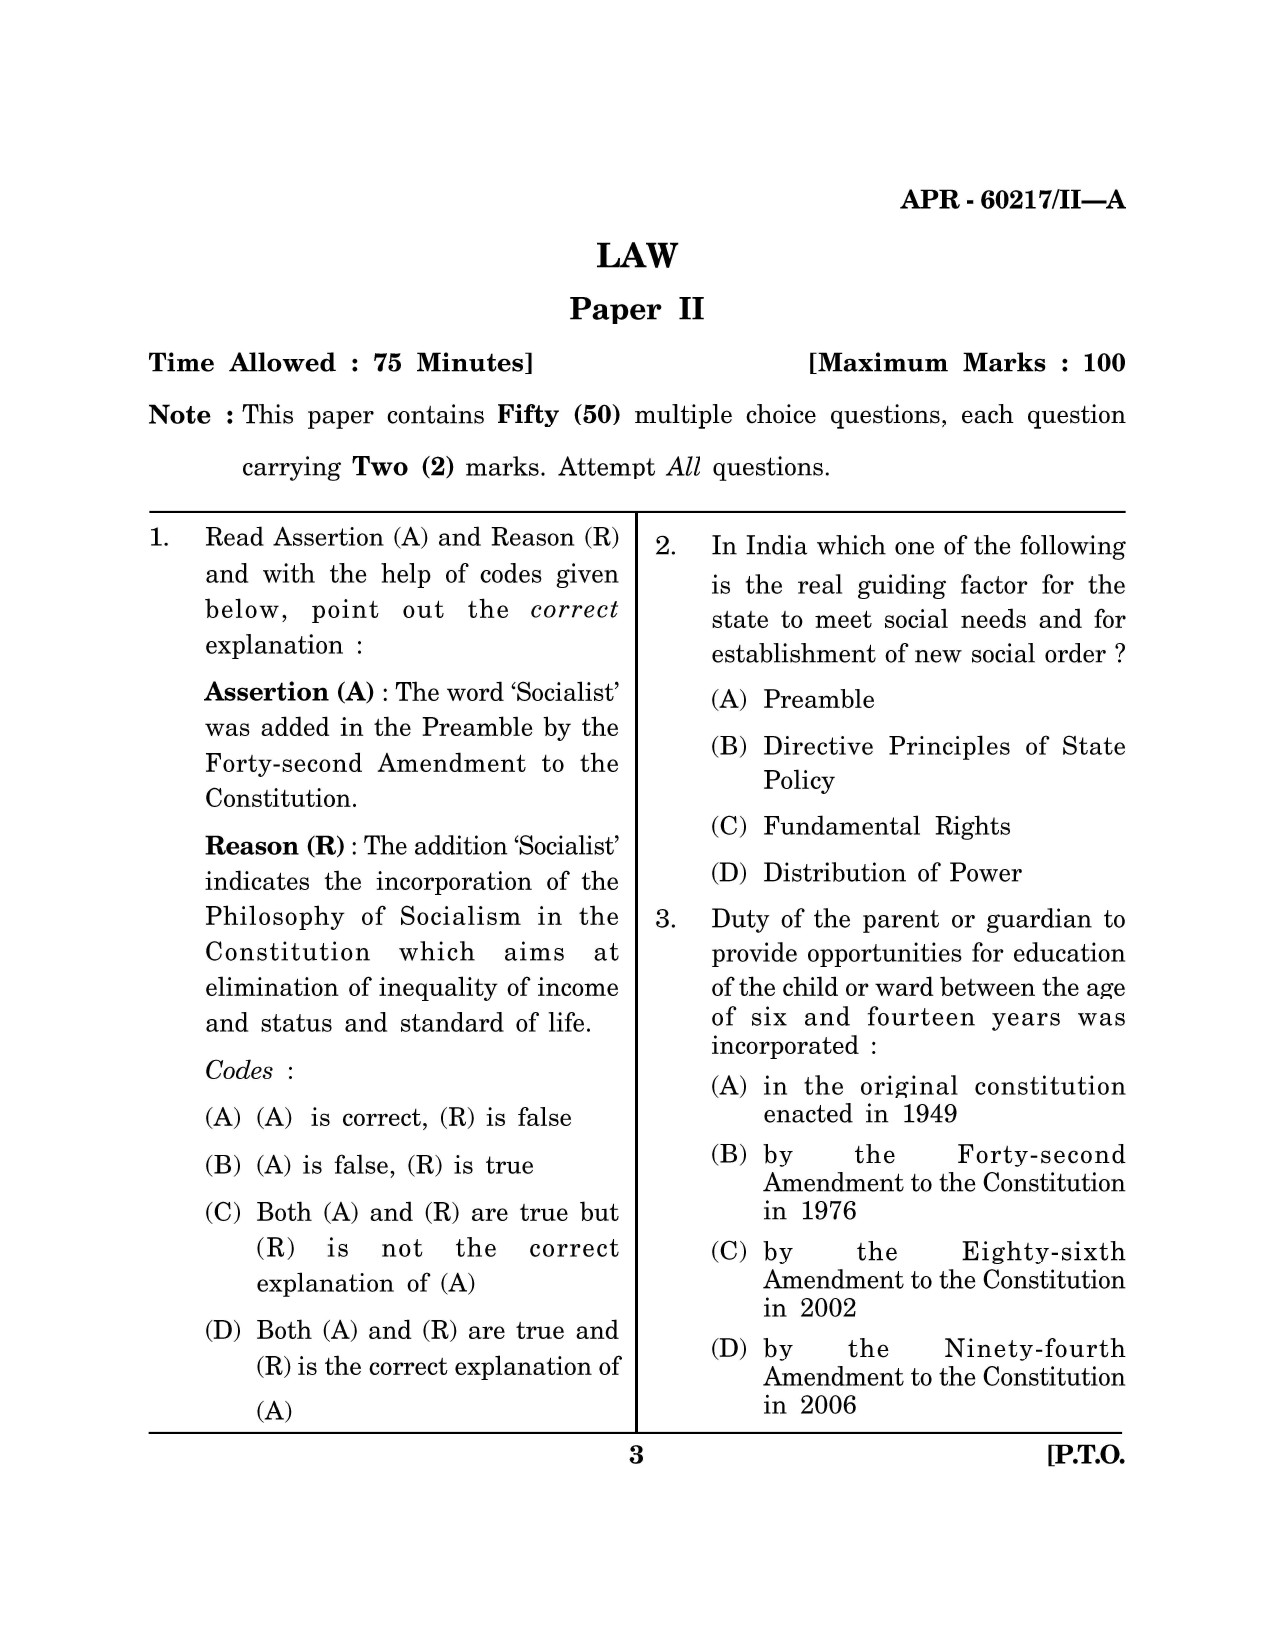 Maharashtra SET Law Question Paper II April 2017 2